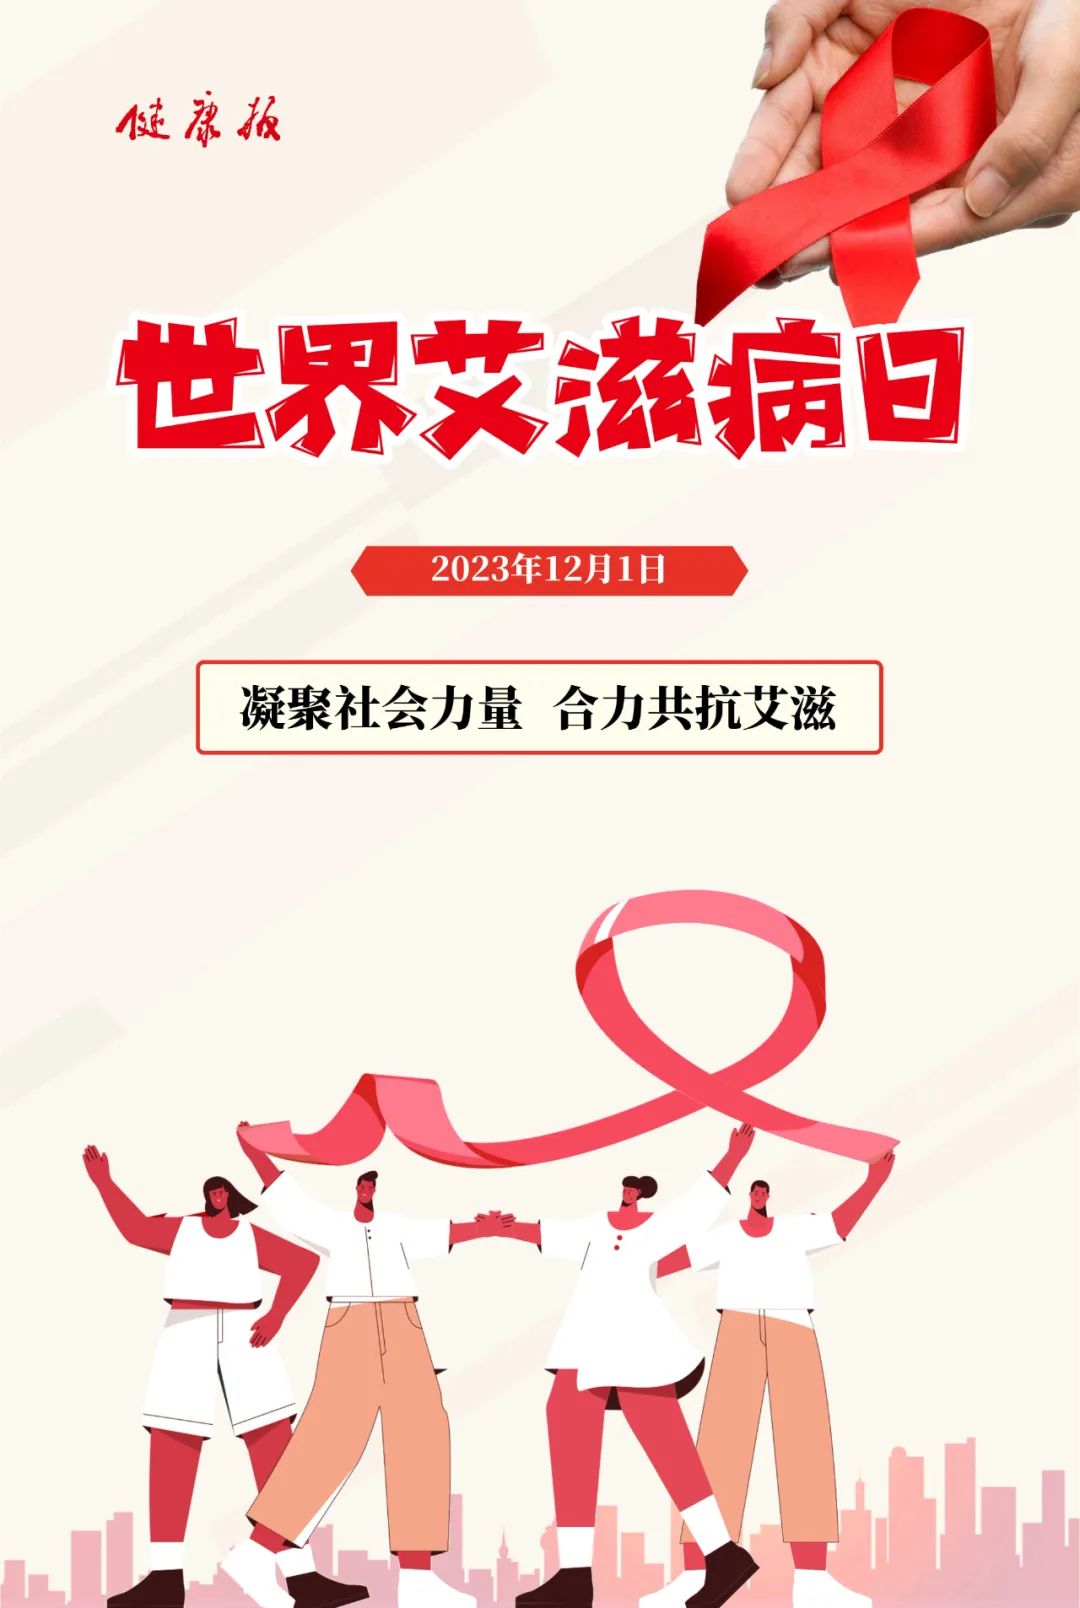 福建农林大学旗山校区开展预防艾滋病宣传系列活动